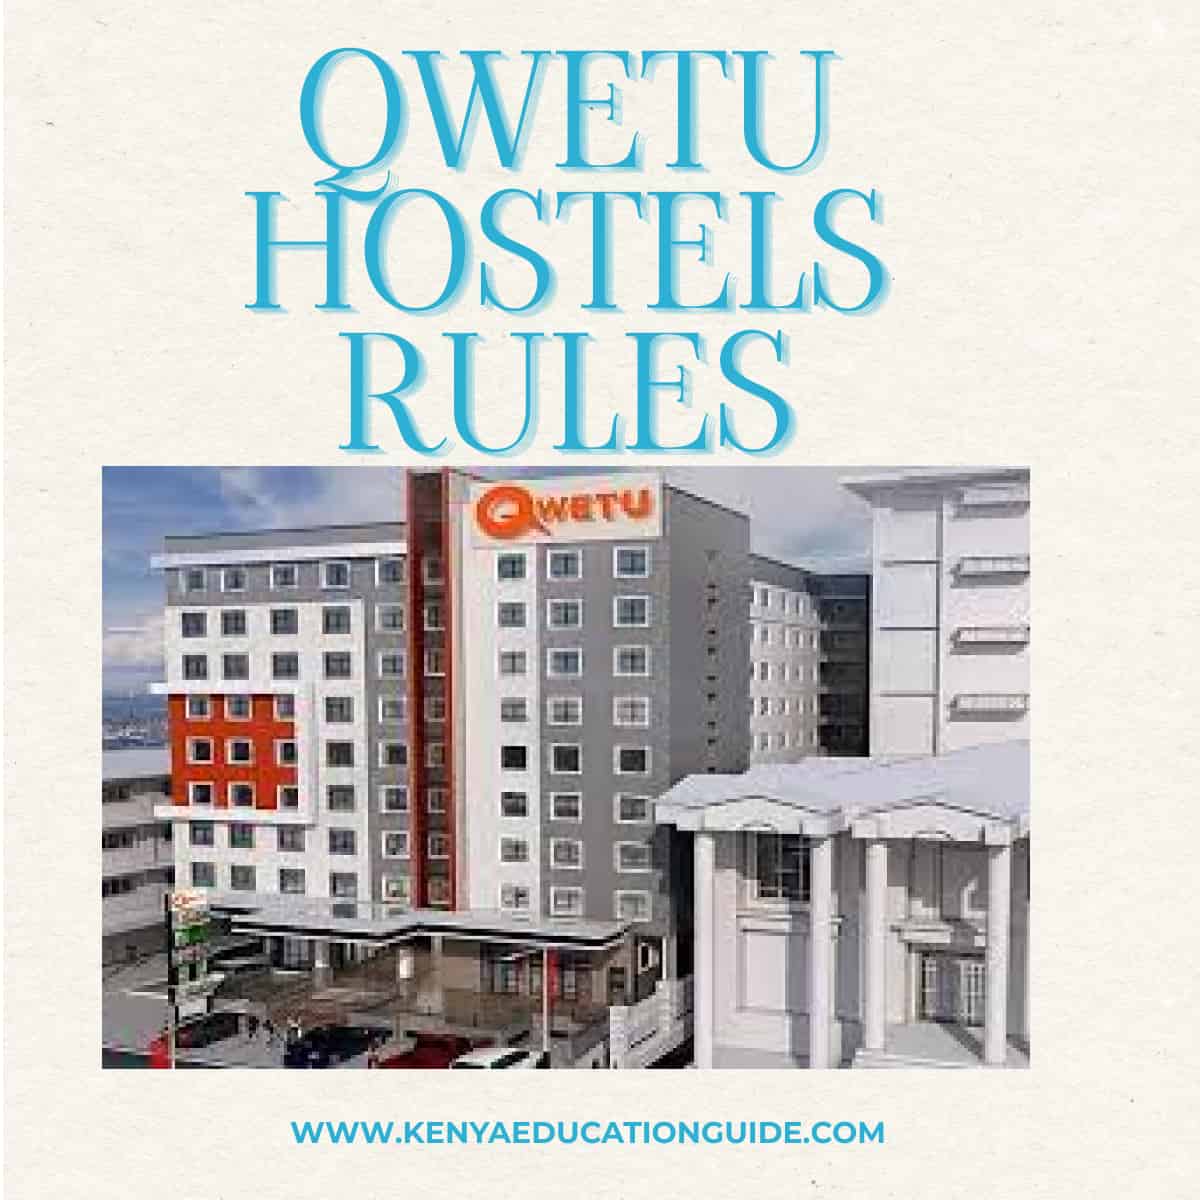 QWETU Hostels Rules